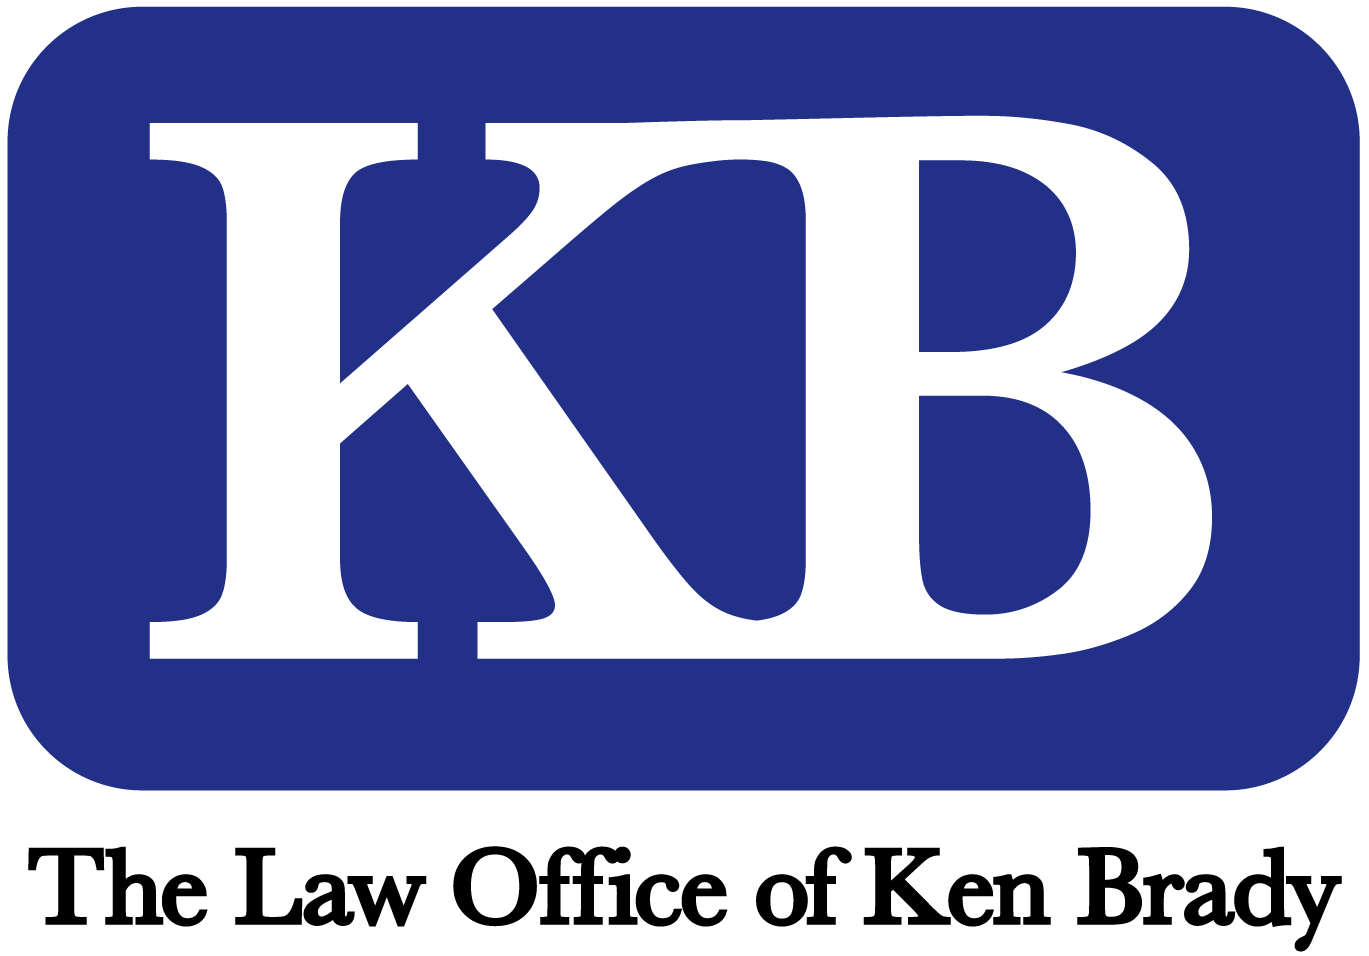 The Law Office of Ken Brady, PLLC